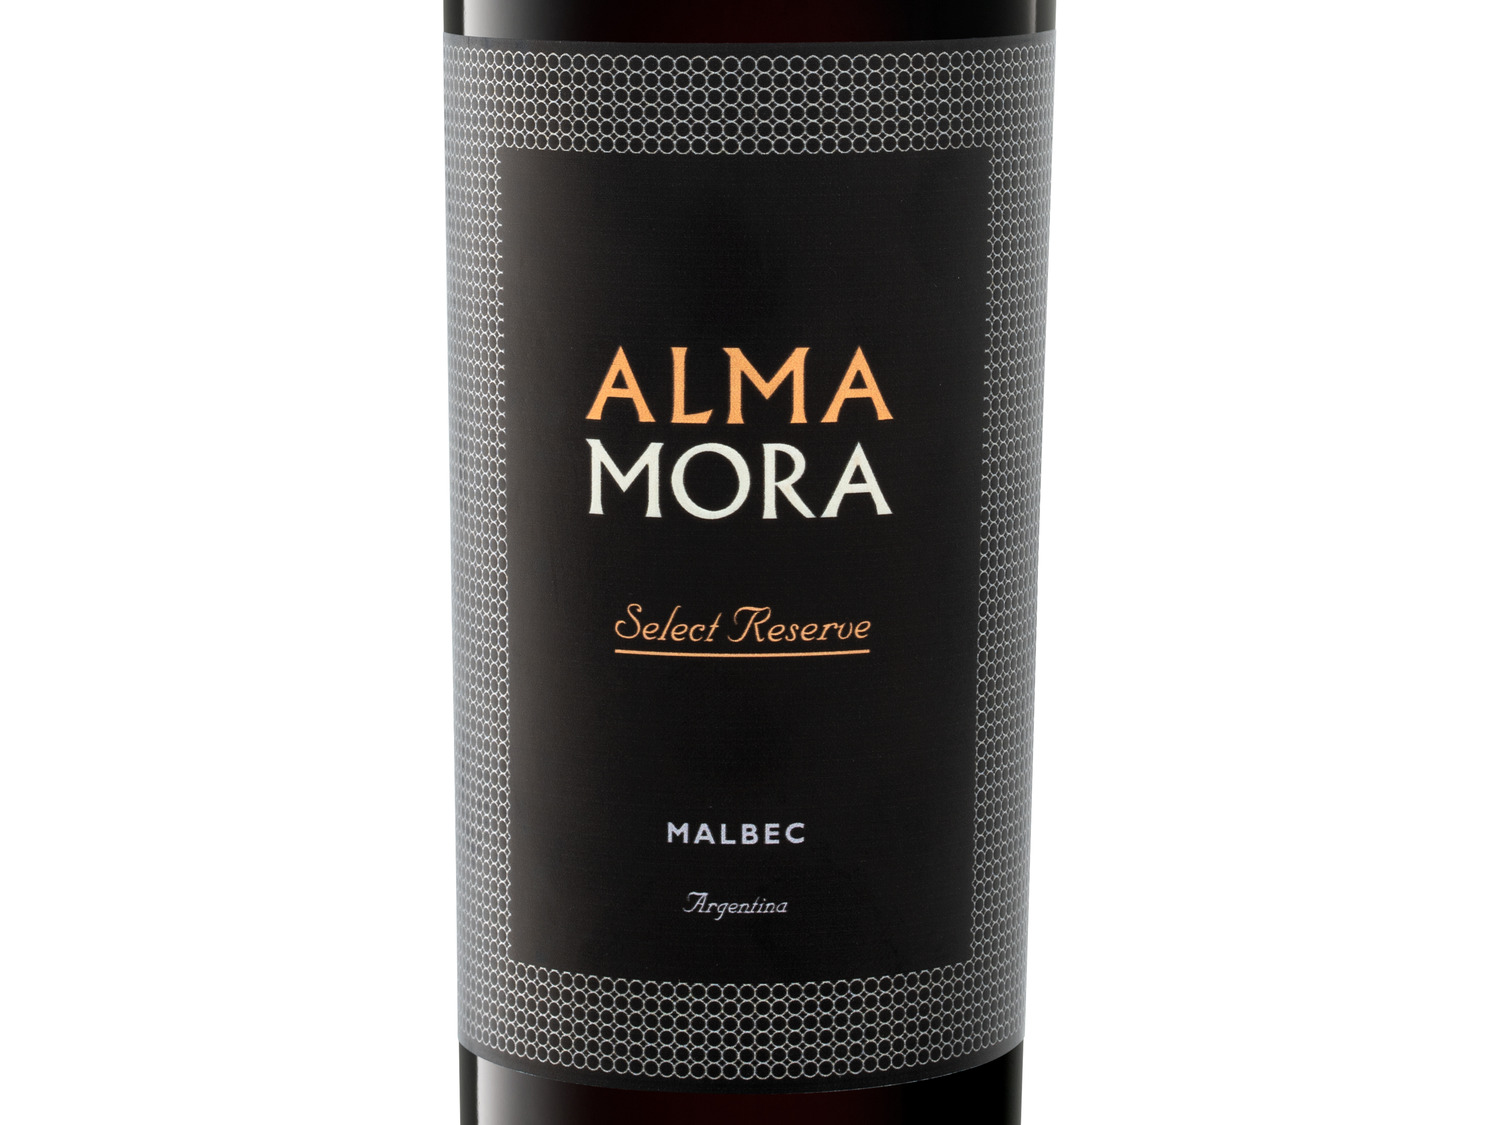 Alma Mora trocken, Reserve Malbec Argentinien Select R…